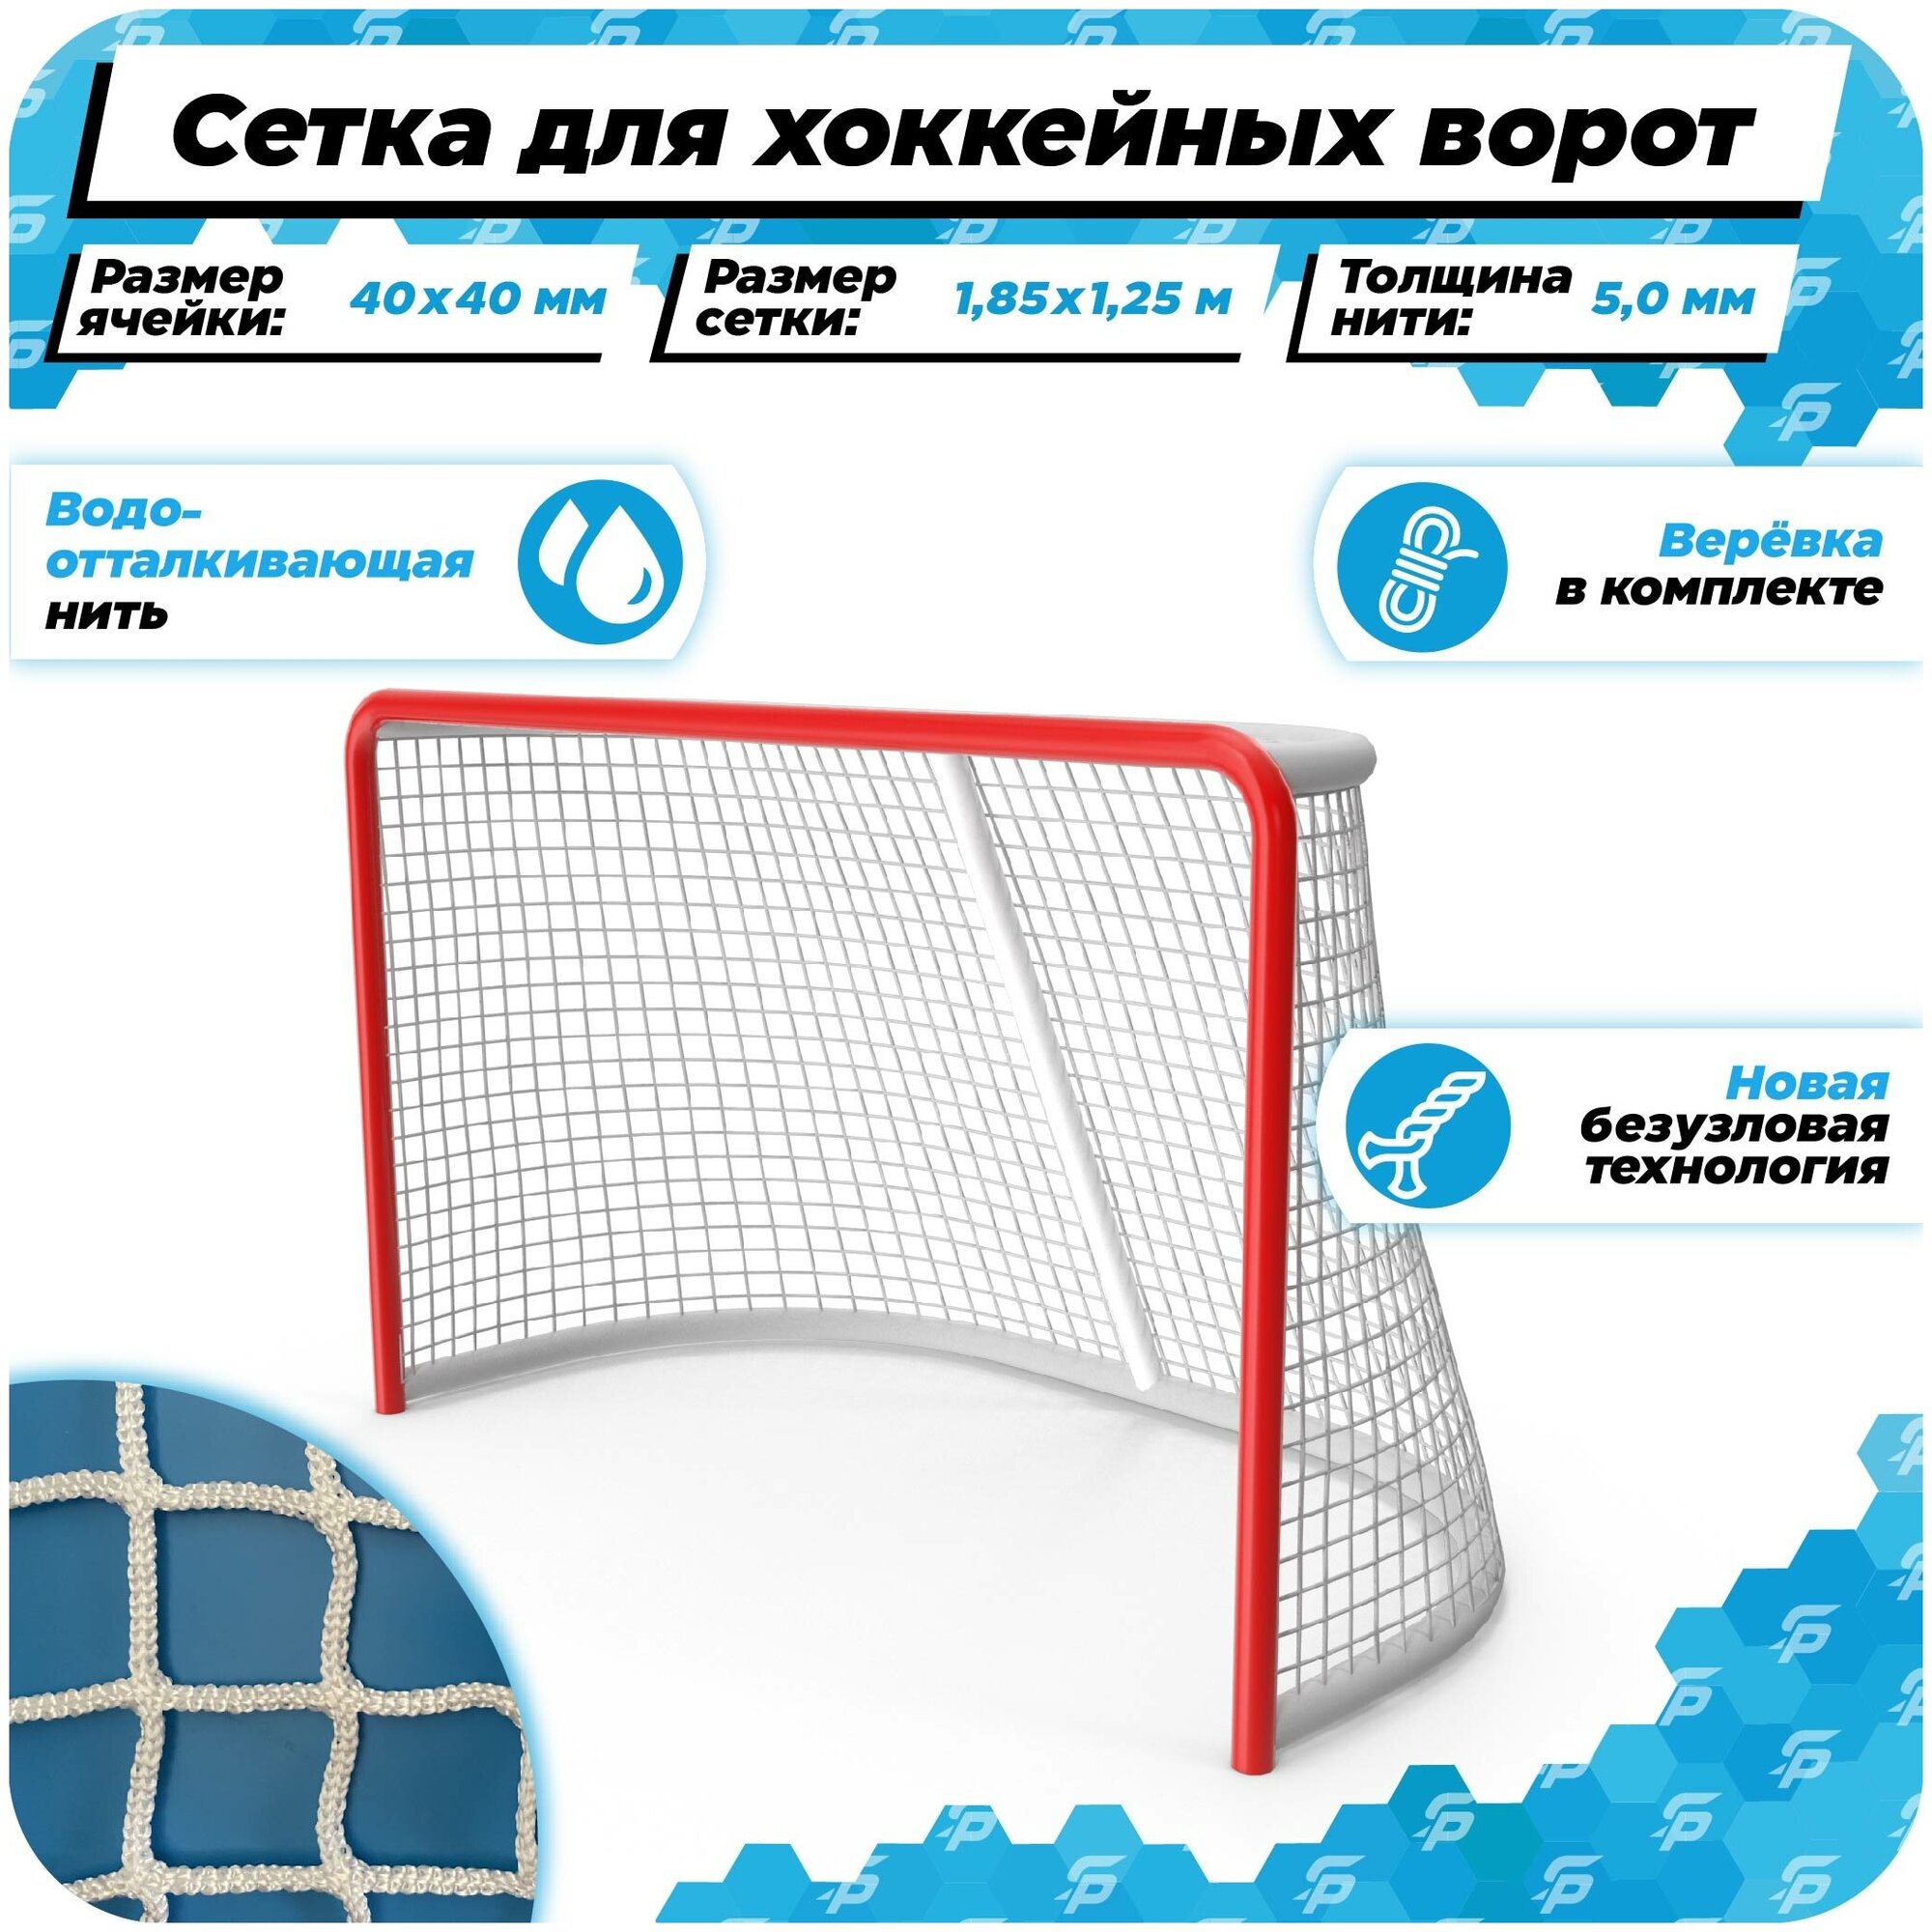 Сетка для хоккейных ворот 1,85 на 1,25 нить 5,0 мм веревка в комплекте